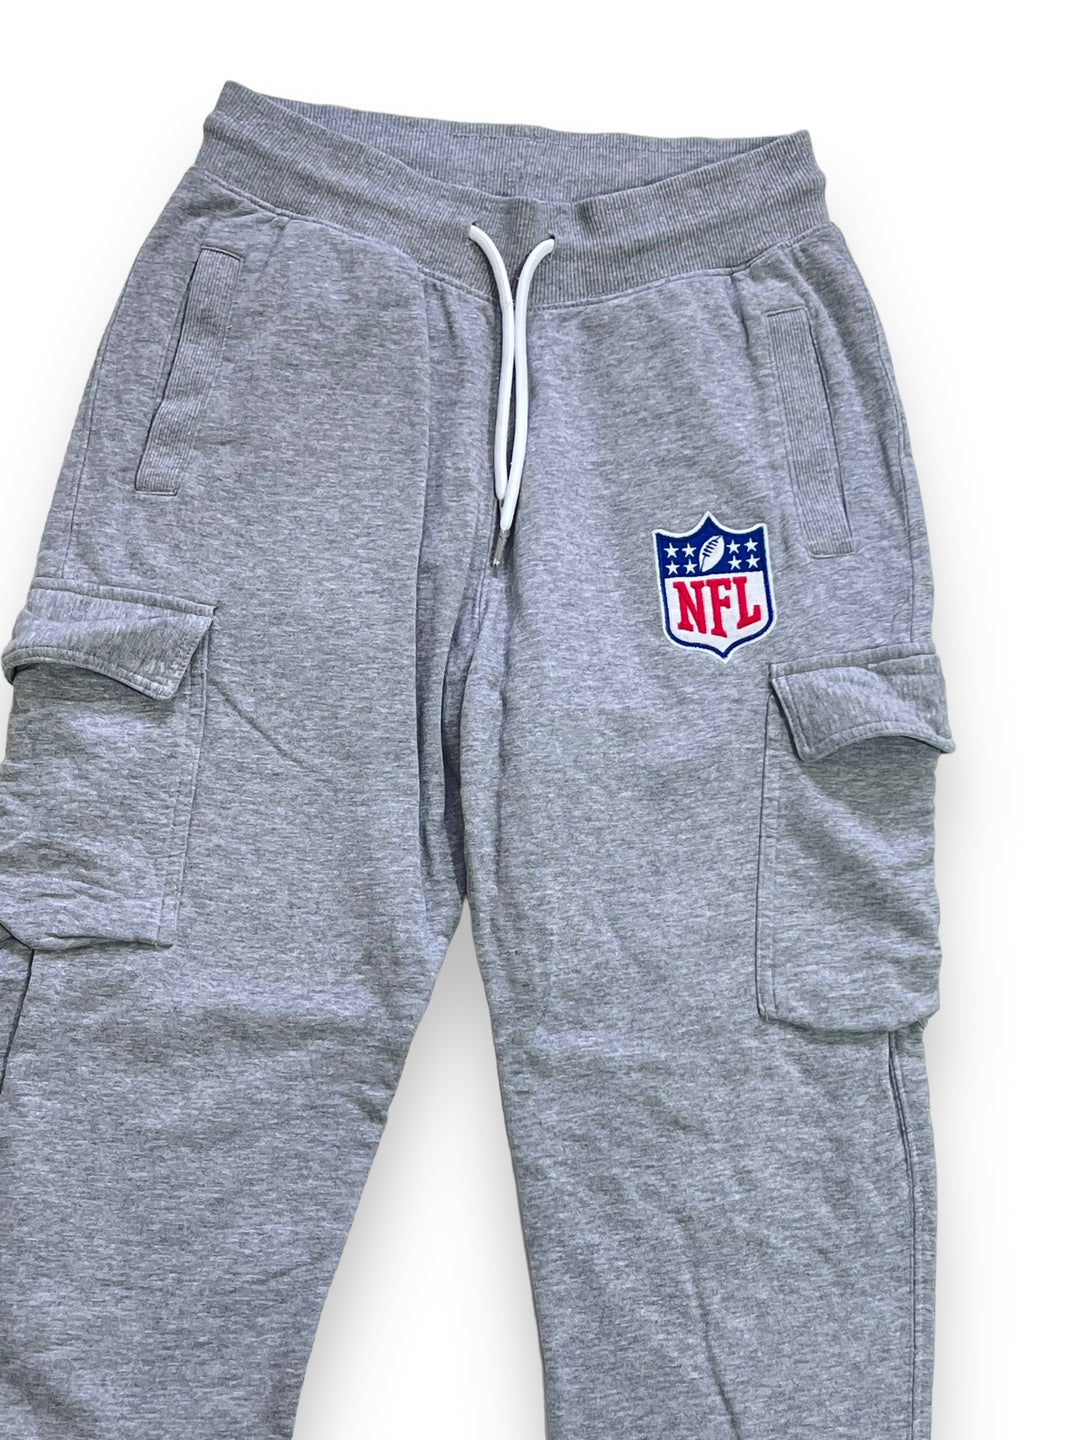 NFL Cotton Sweatpants Men's Small